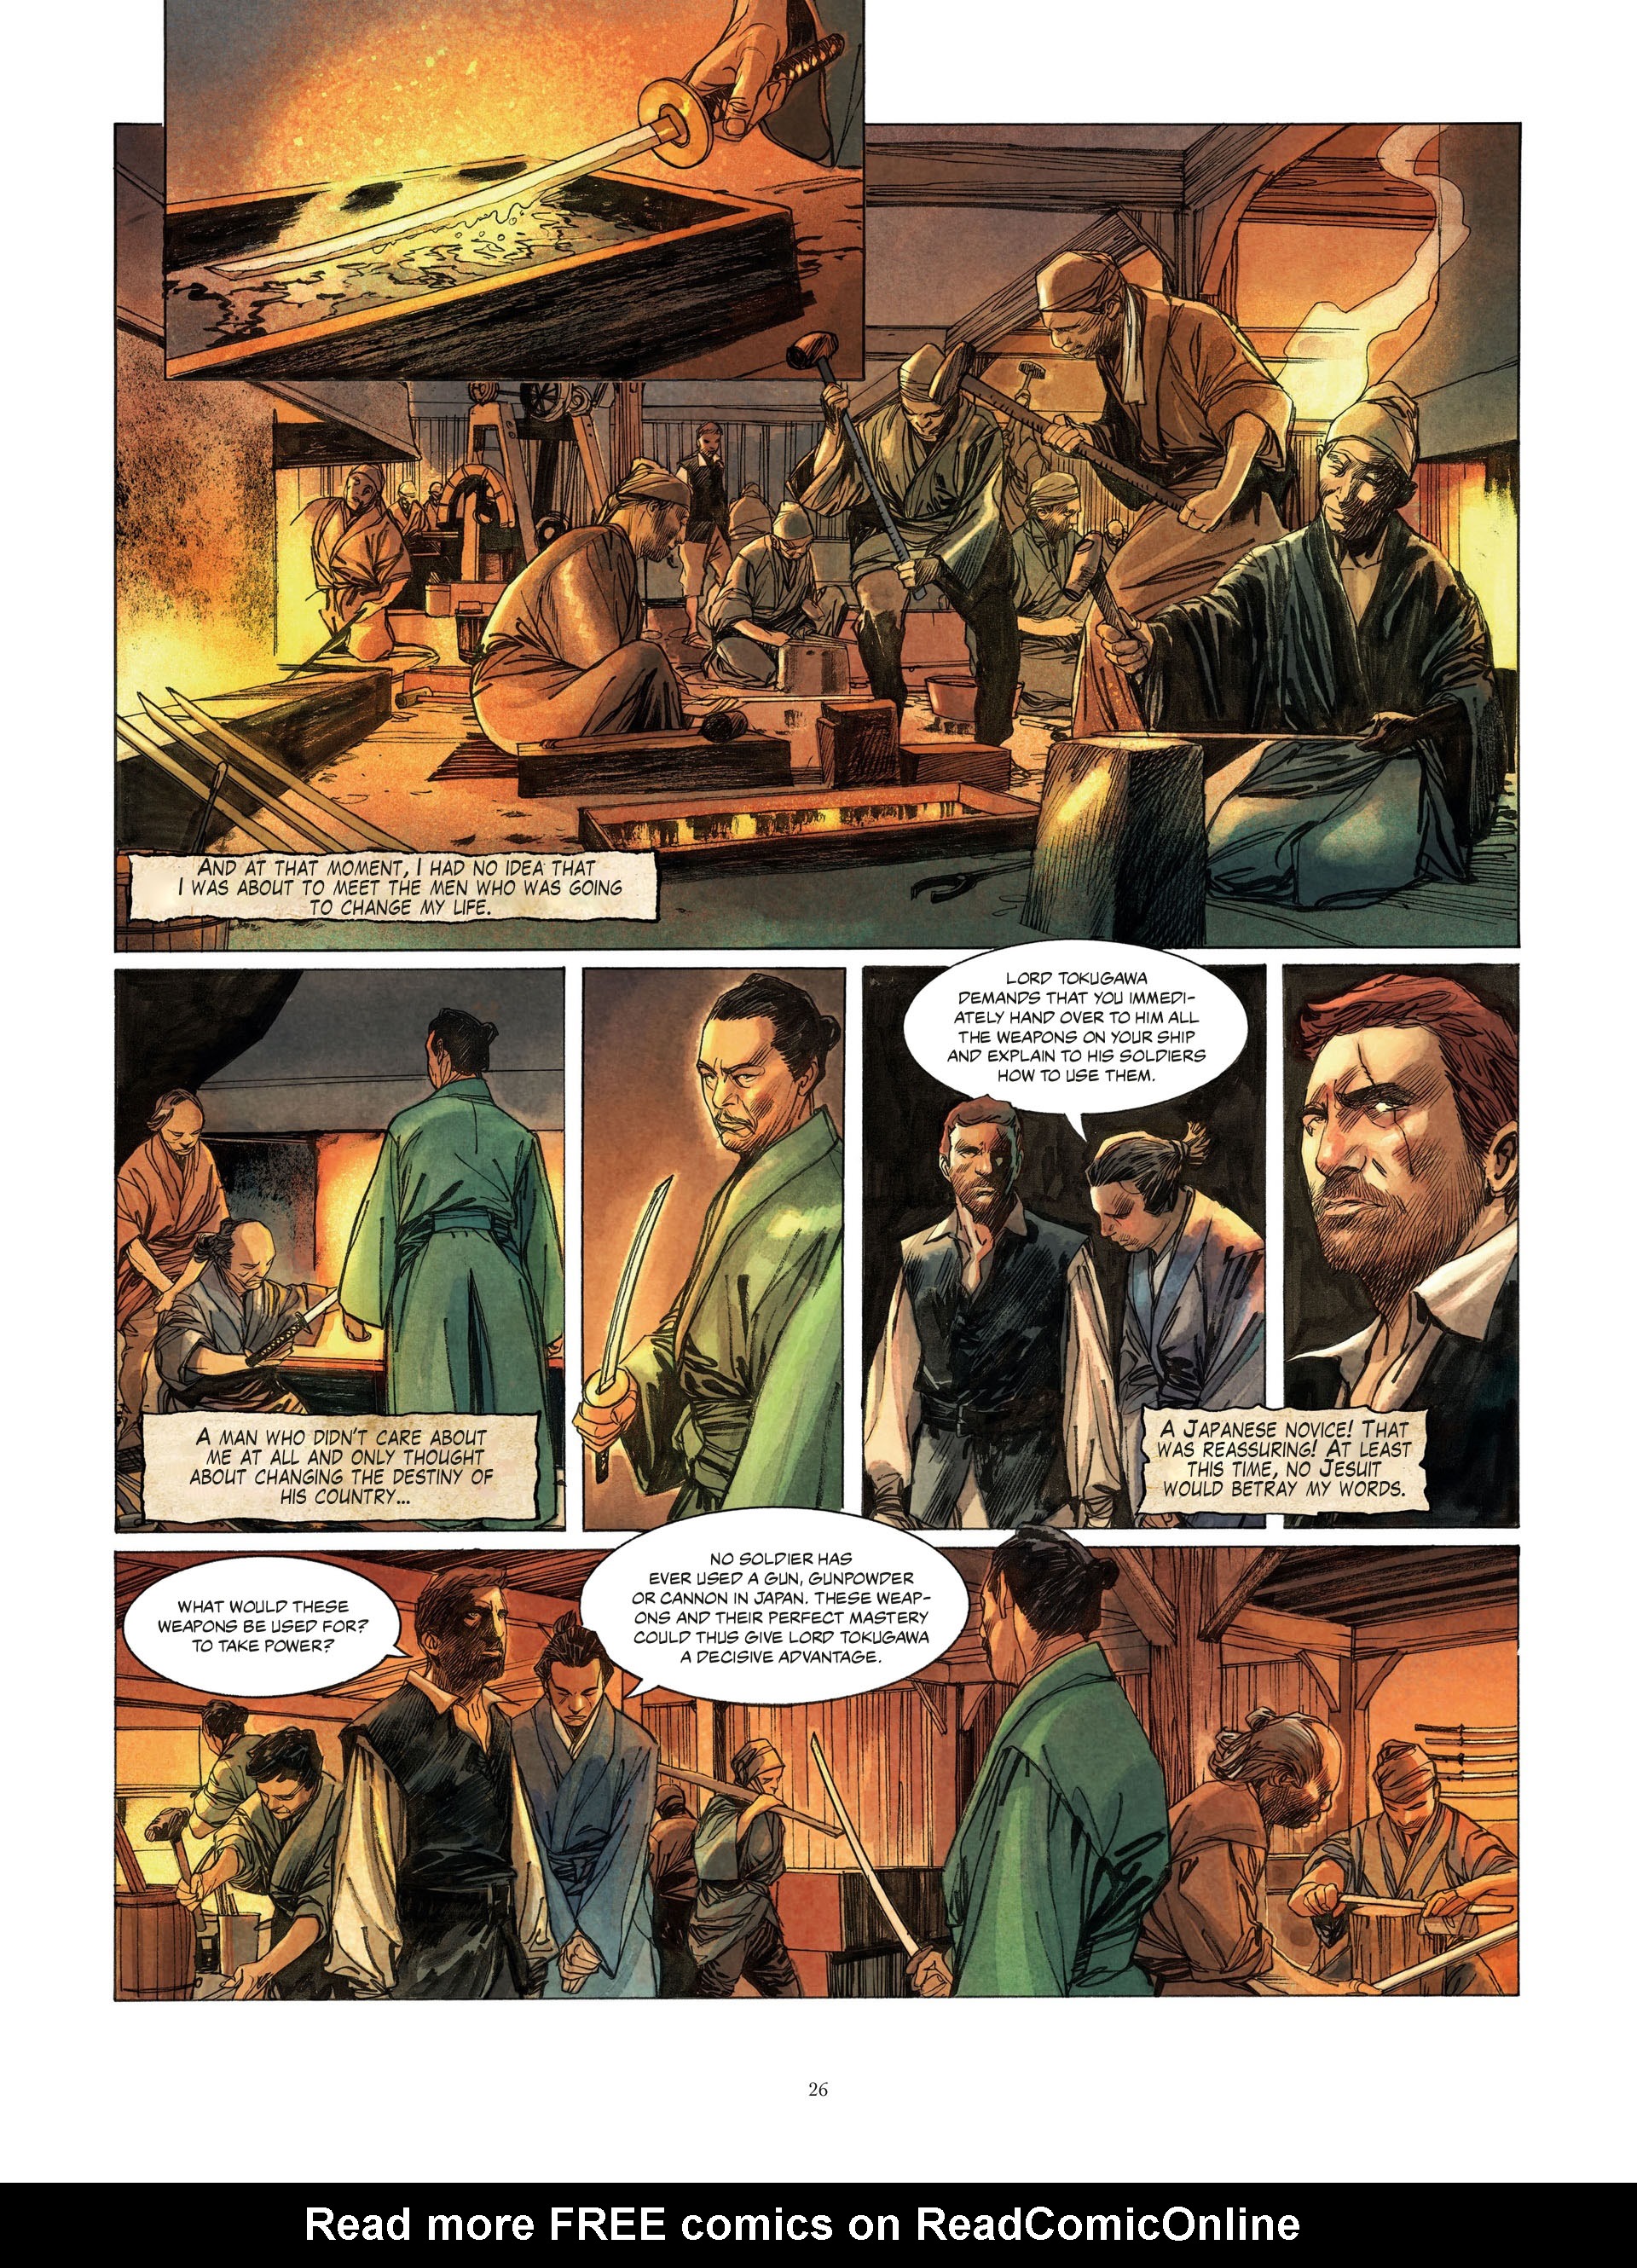 Read online William Adams, Samuraj comic -  Issue #1 - 26